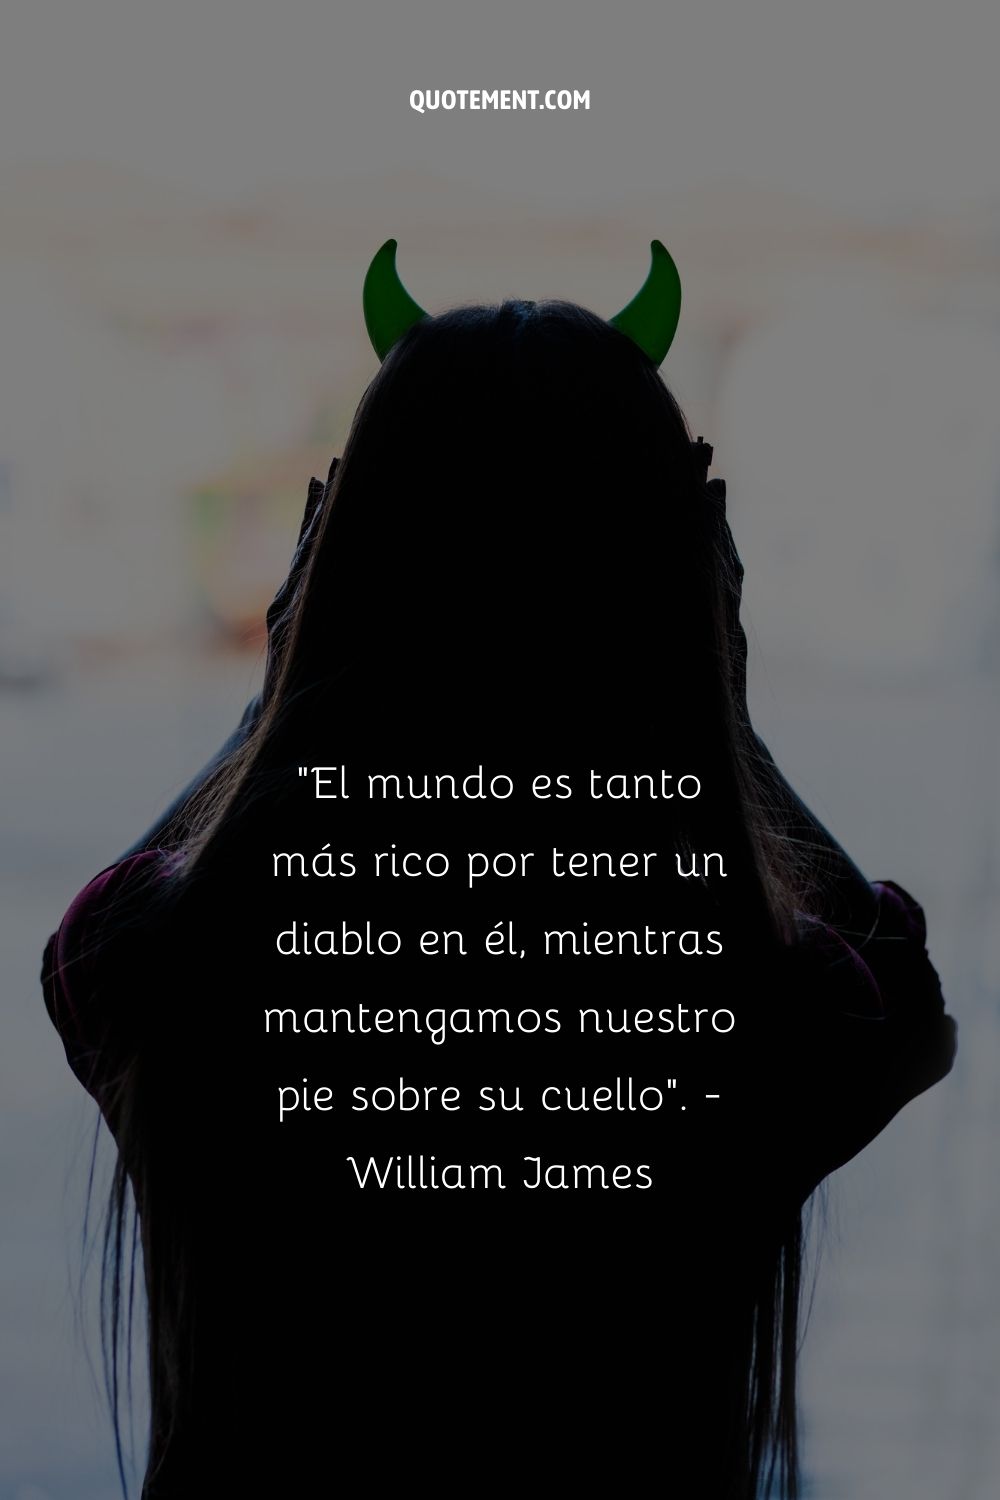 "El mundo es tanto más rico por tener un diablo en él, siempre y cuando mantengamos nuestro pie sobre su cuello". - William James